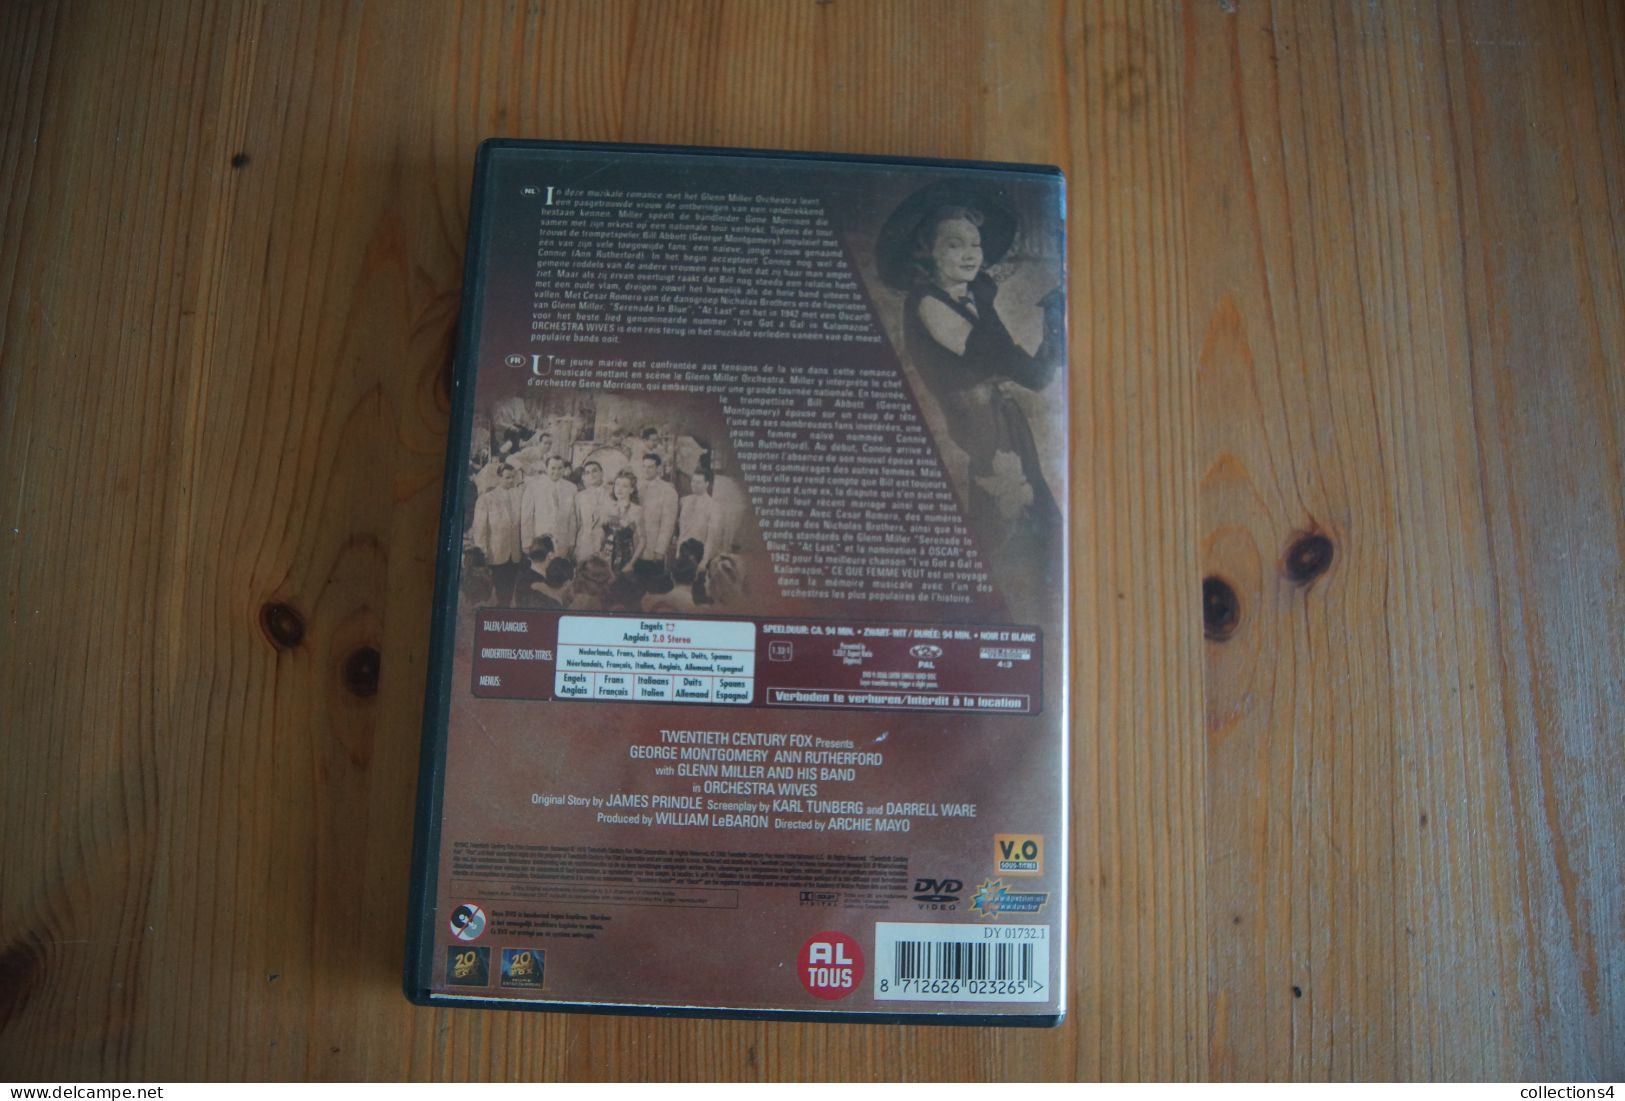 ORCHESTRA WIVES DVD DU FILM DE 1942 GLENN MILLER GEORGE MONTGOMERY ANN RUTHFORD BO TRES JAZZ - Music On DVD